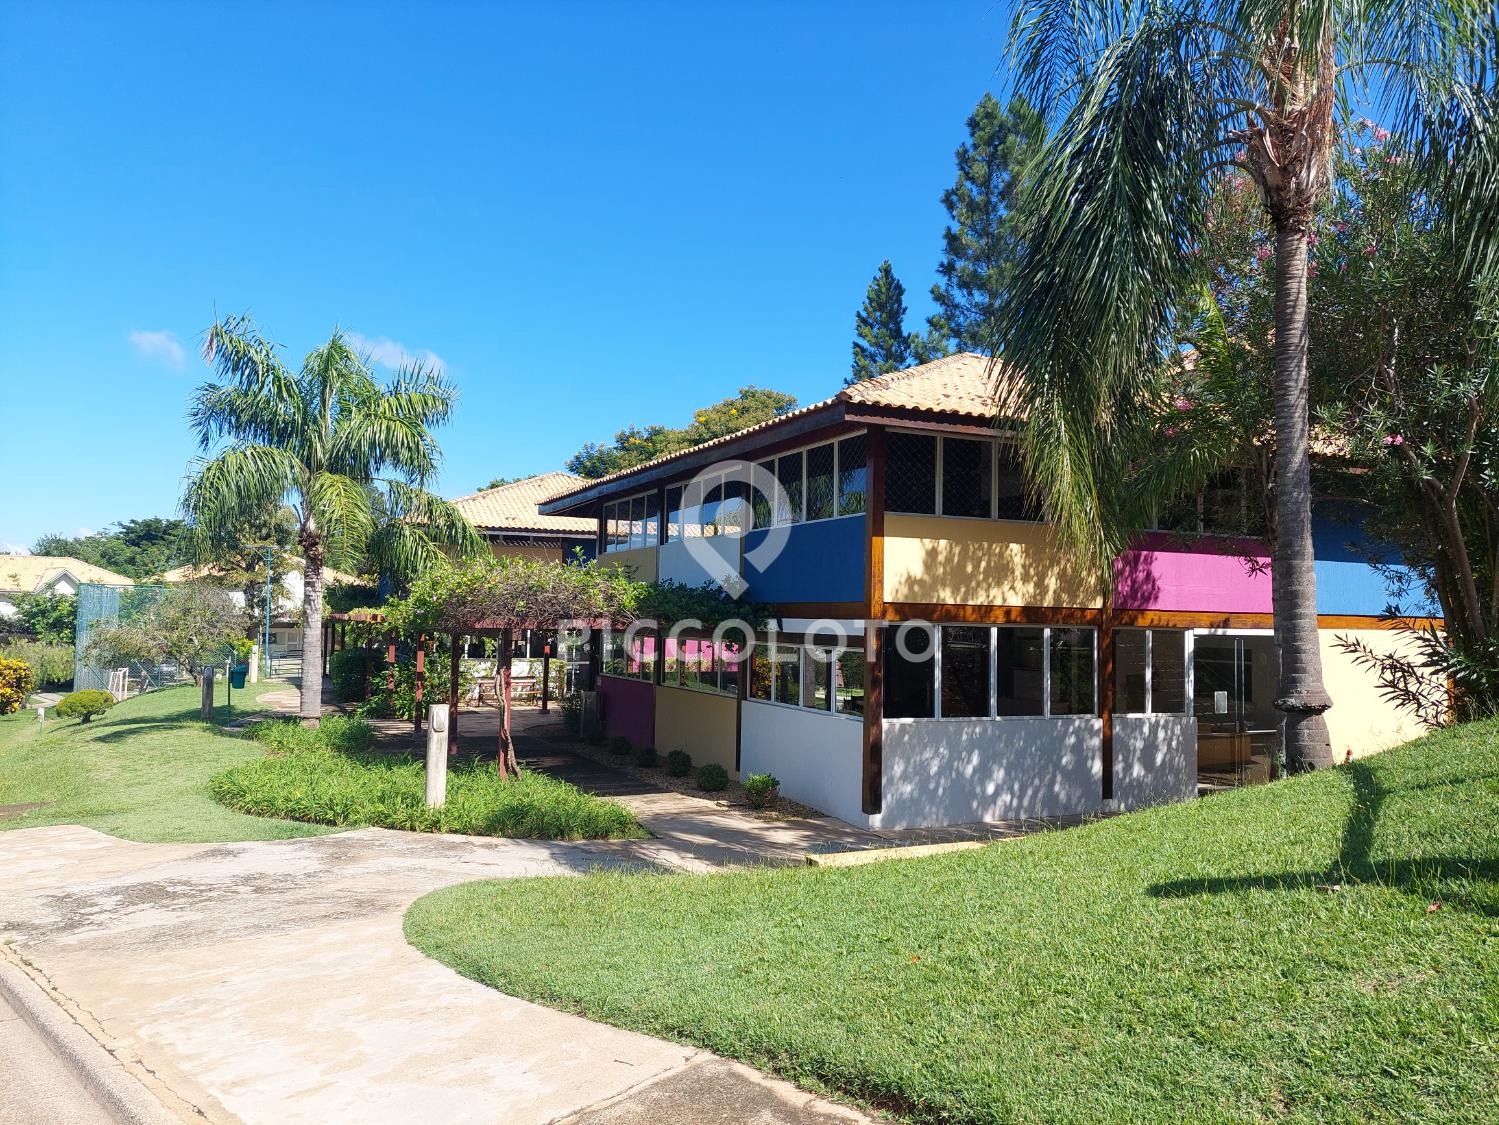 Piccoloto -Casa à venda no Loteamento Alphaville Campinas em Campinas